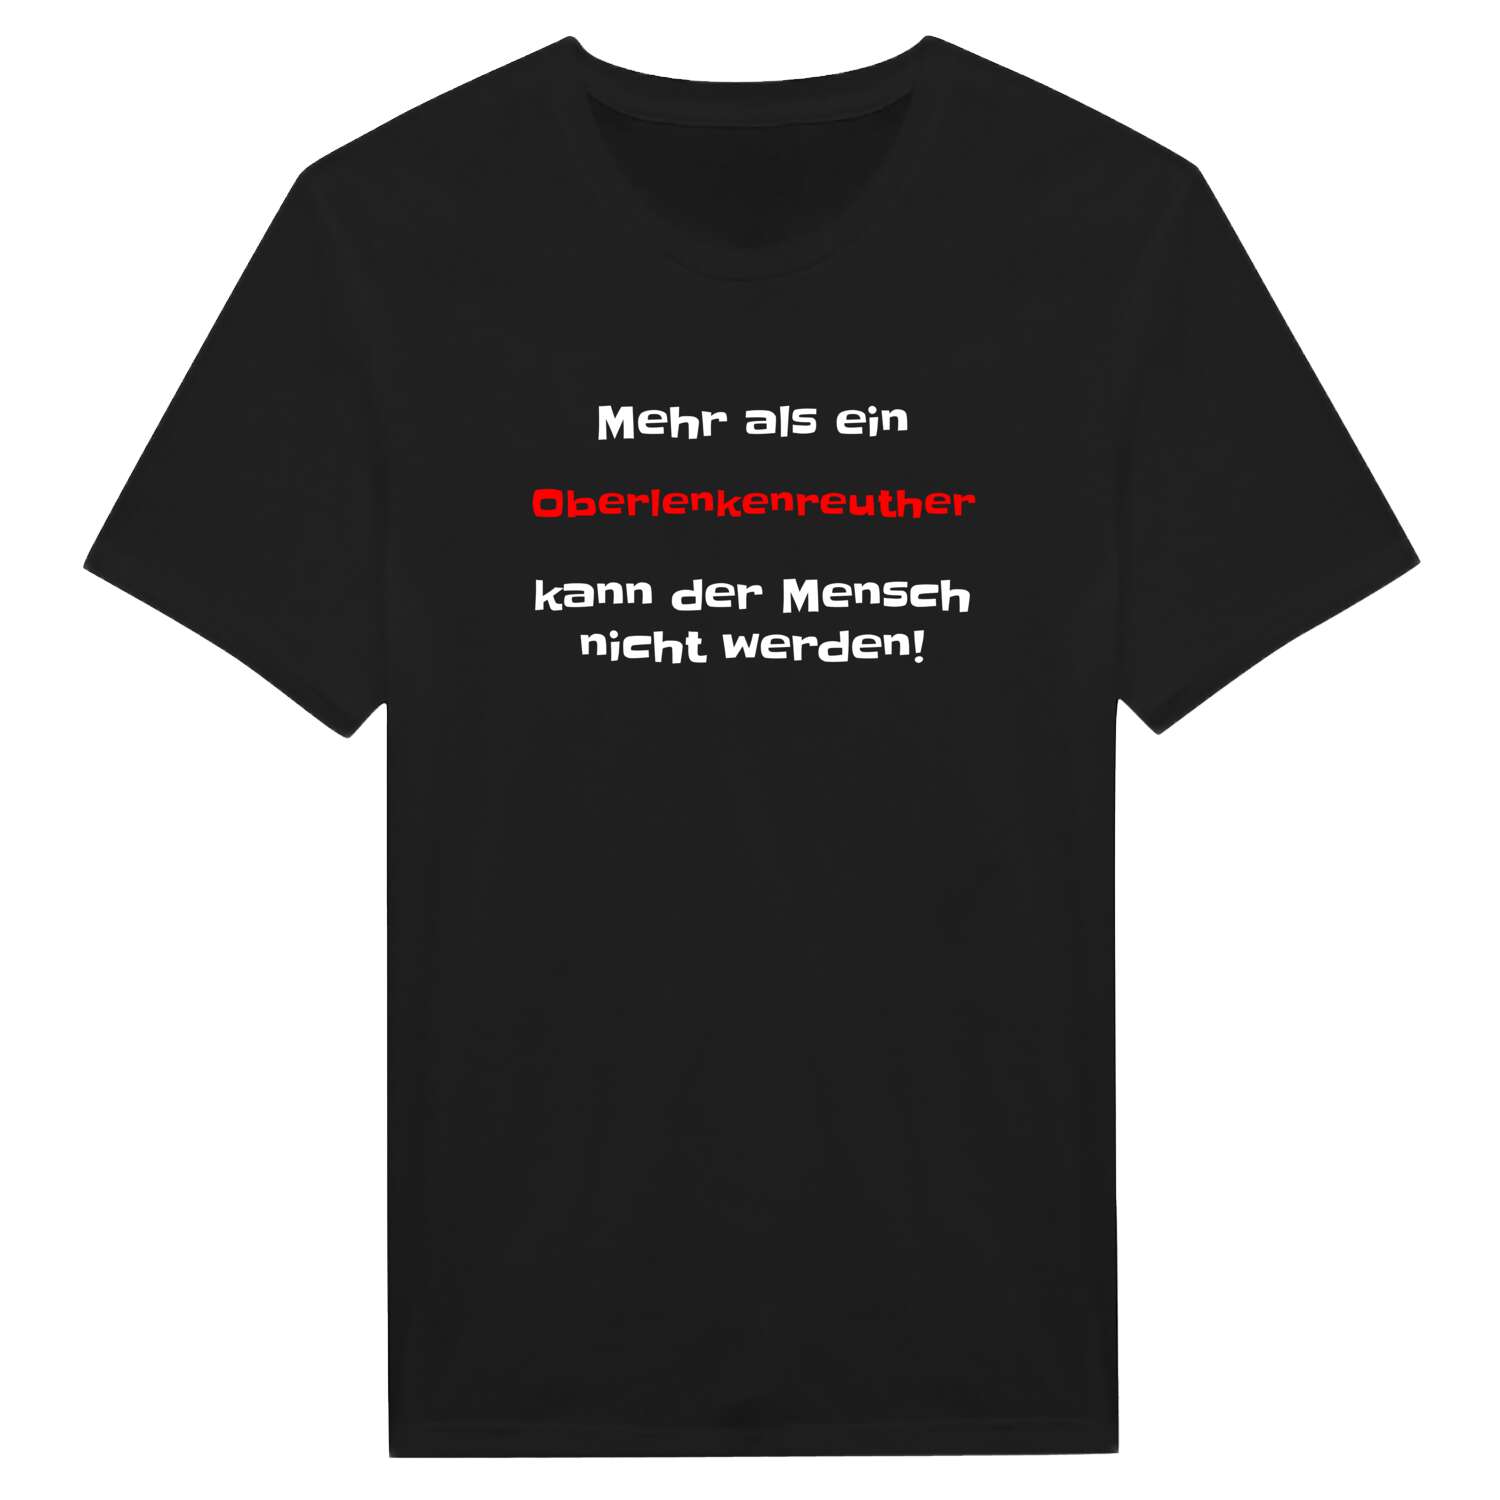 Oberlenkenreuth T-Shirt »Mehr als ein«